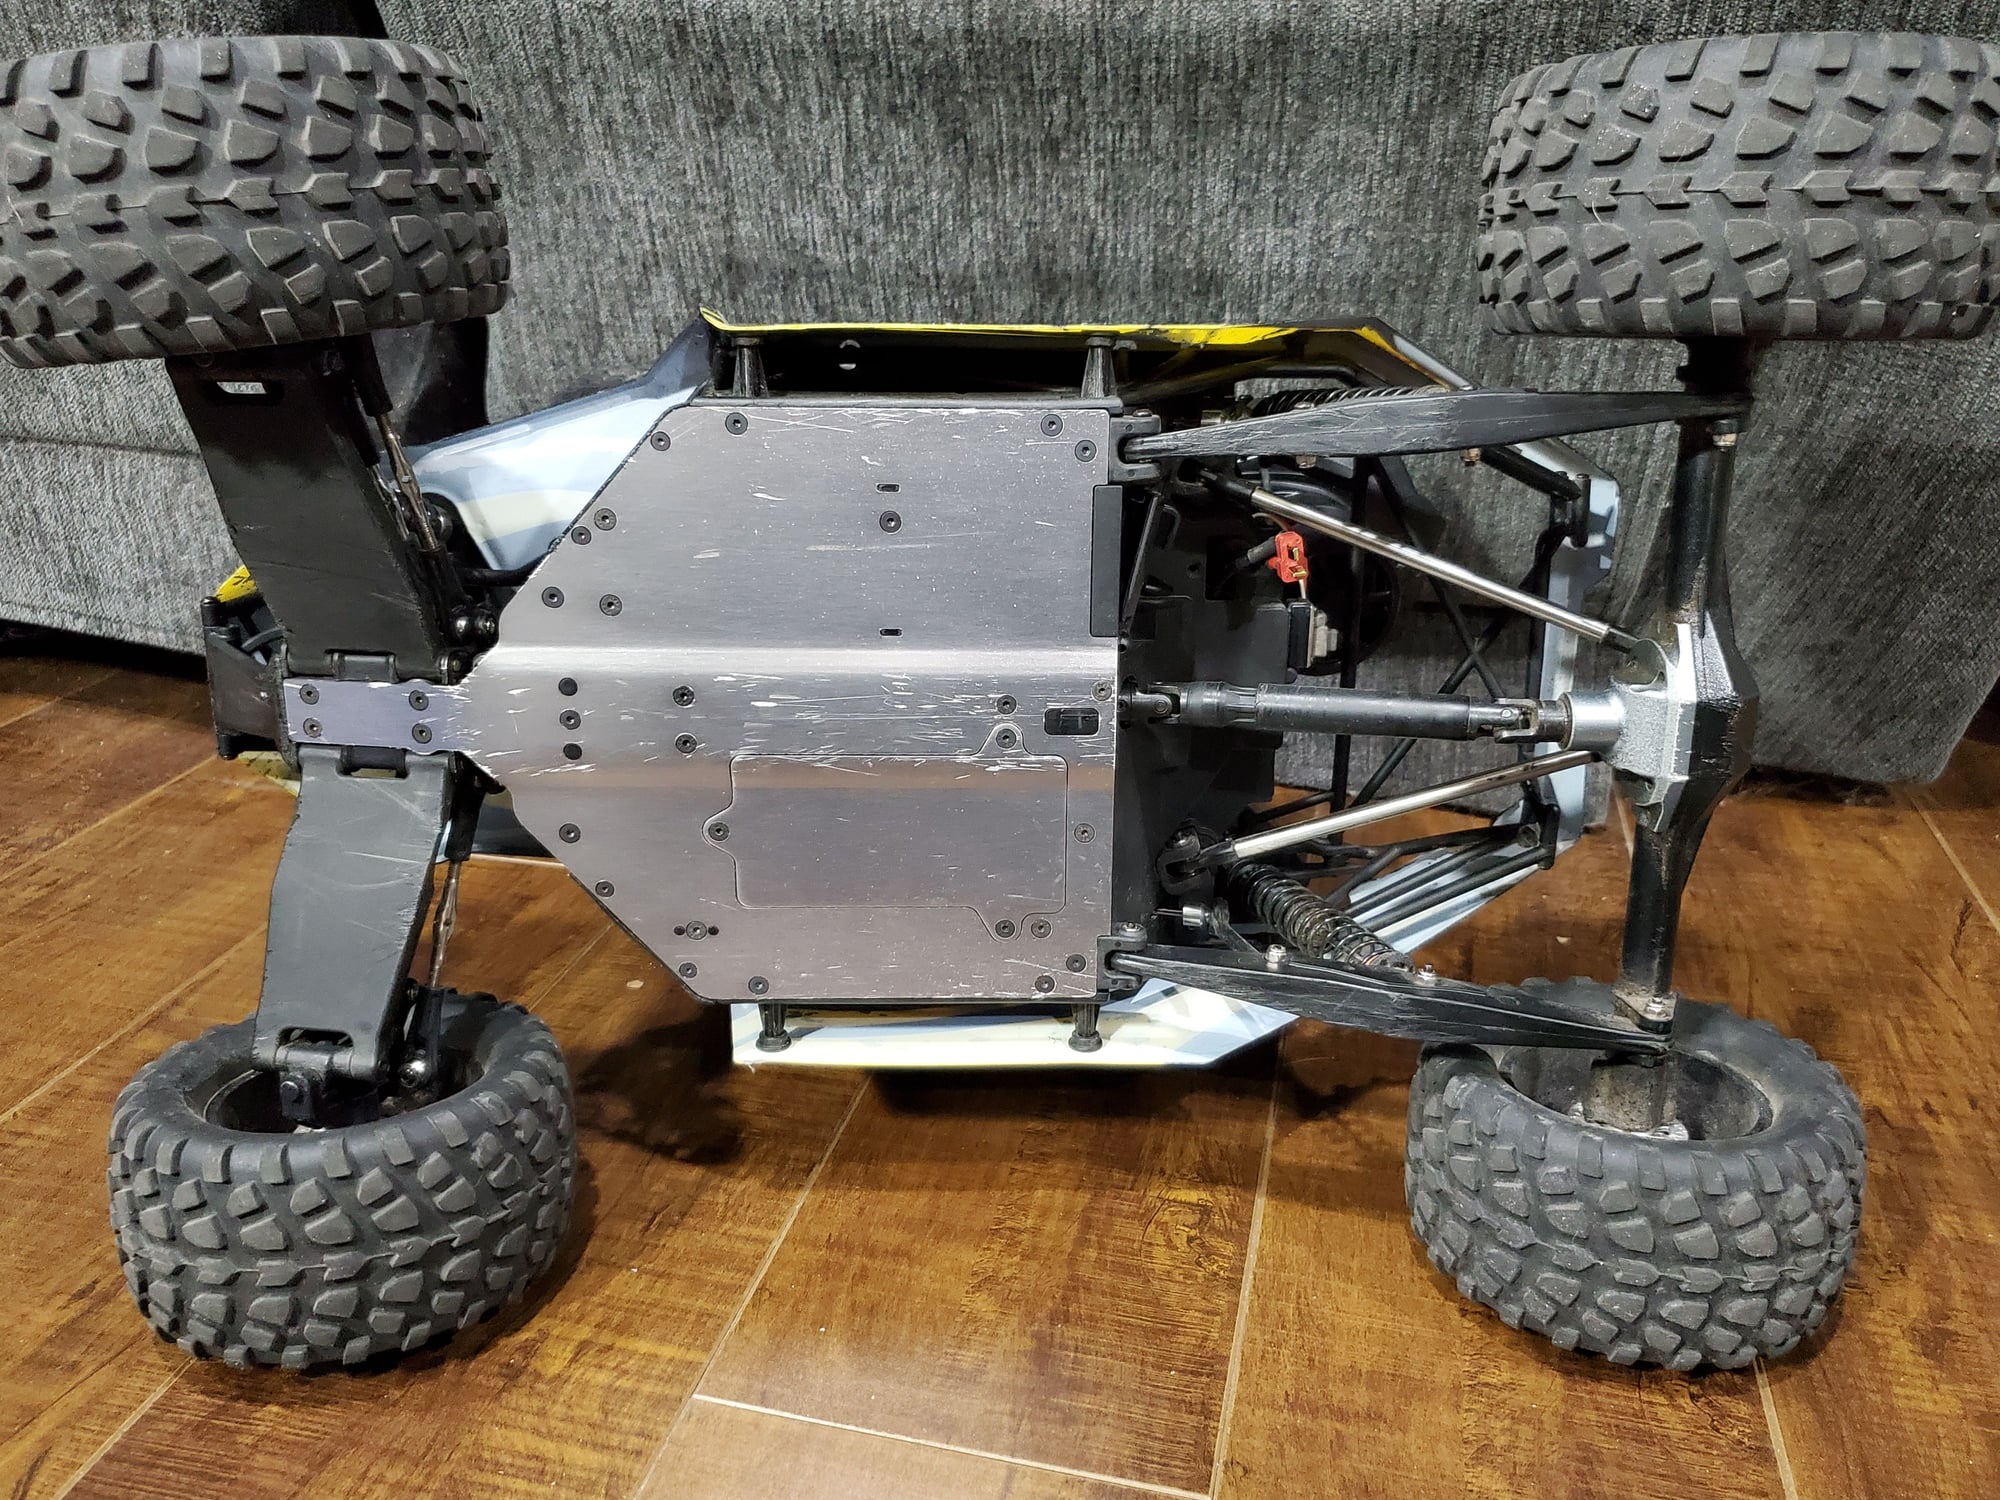 FS: 1/10 LOSI Rock Rey 4WD Brushless RTR Rock Racer Crawler - R/C Tech ...